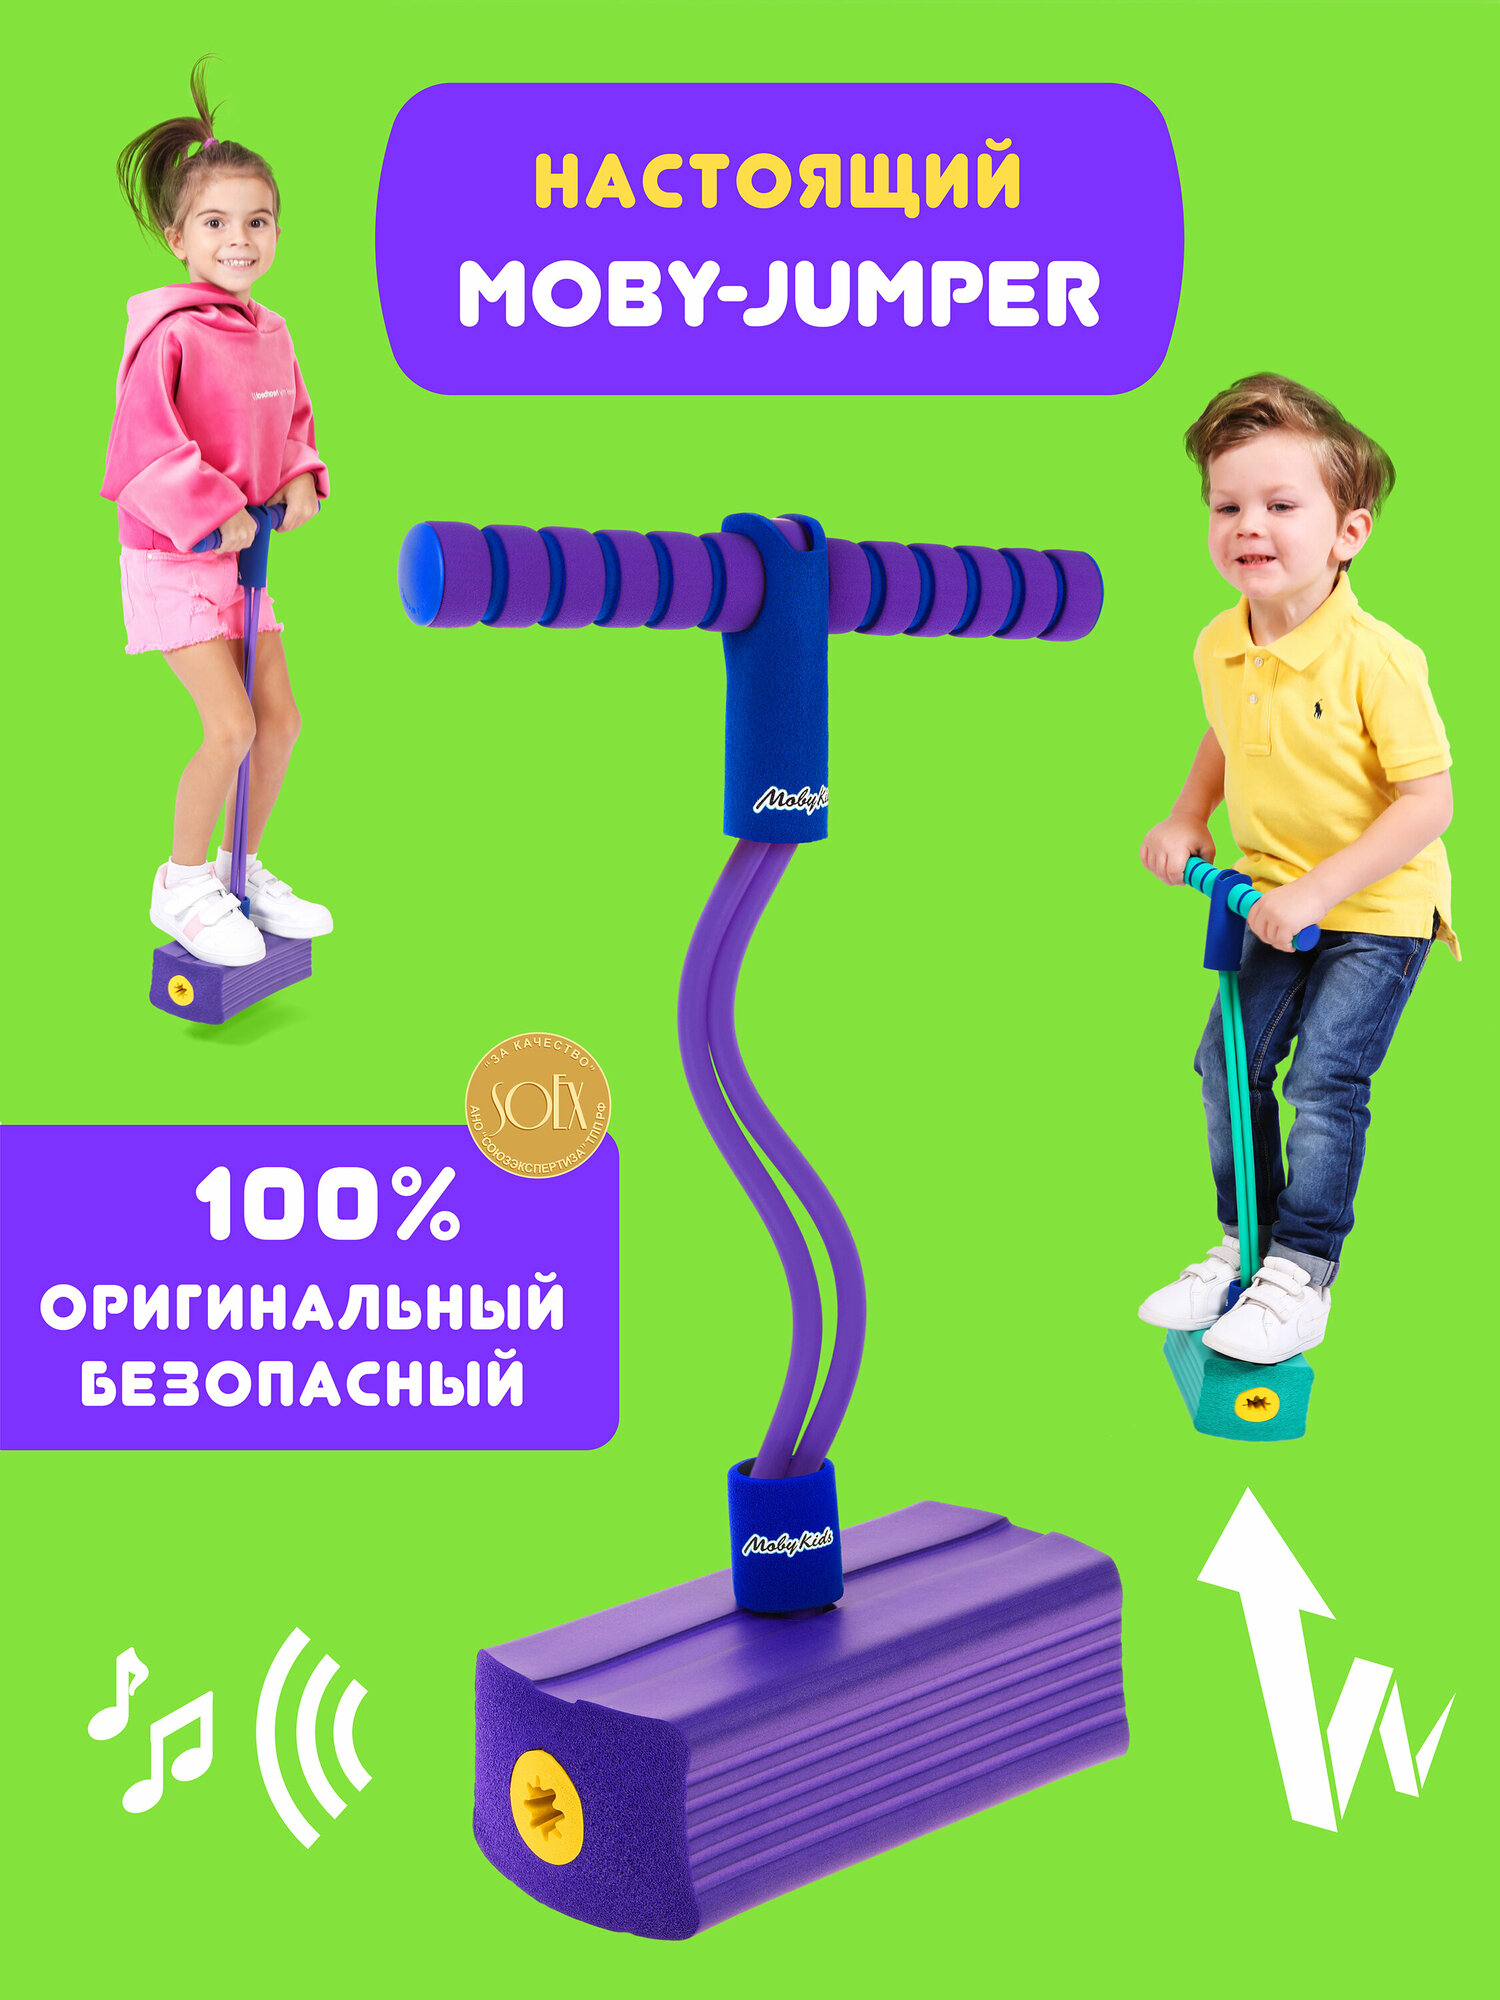 MobyJumper. Тренажер для прыжков со звуком, фиолет.